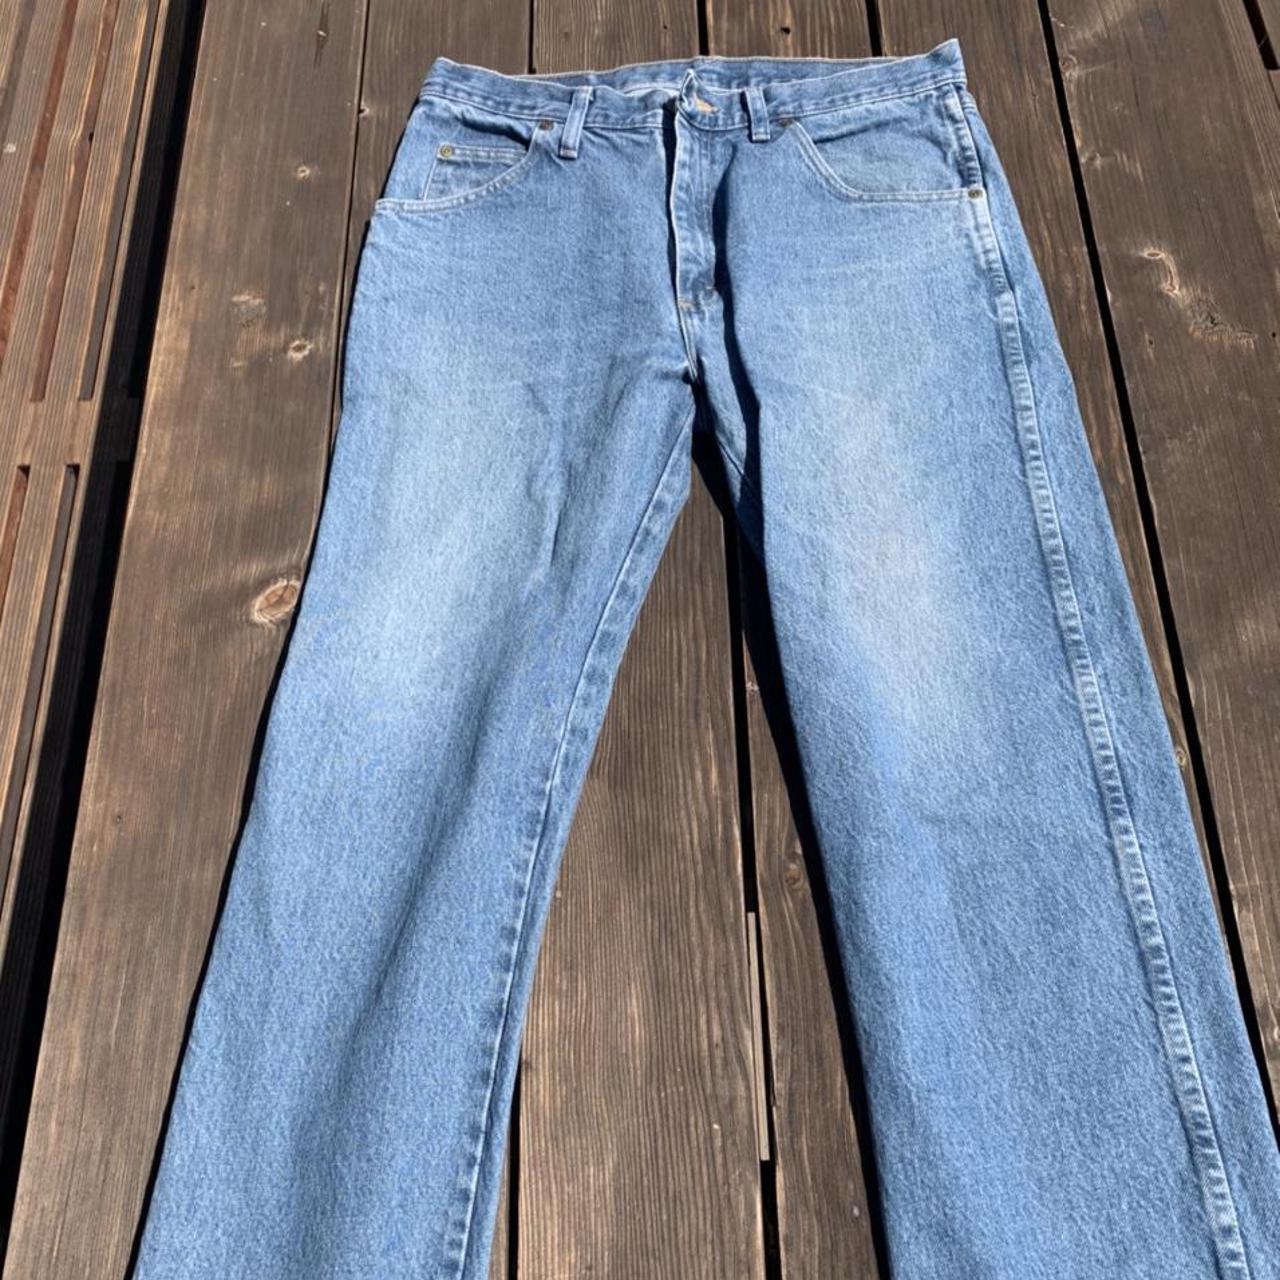 🥶WRANGLER JEANS🥶 remarkable vintage jeans in amazing... - Depop